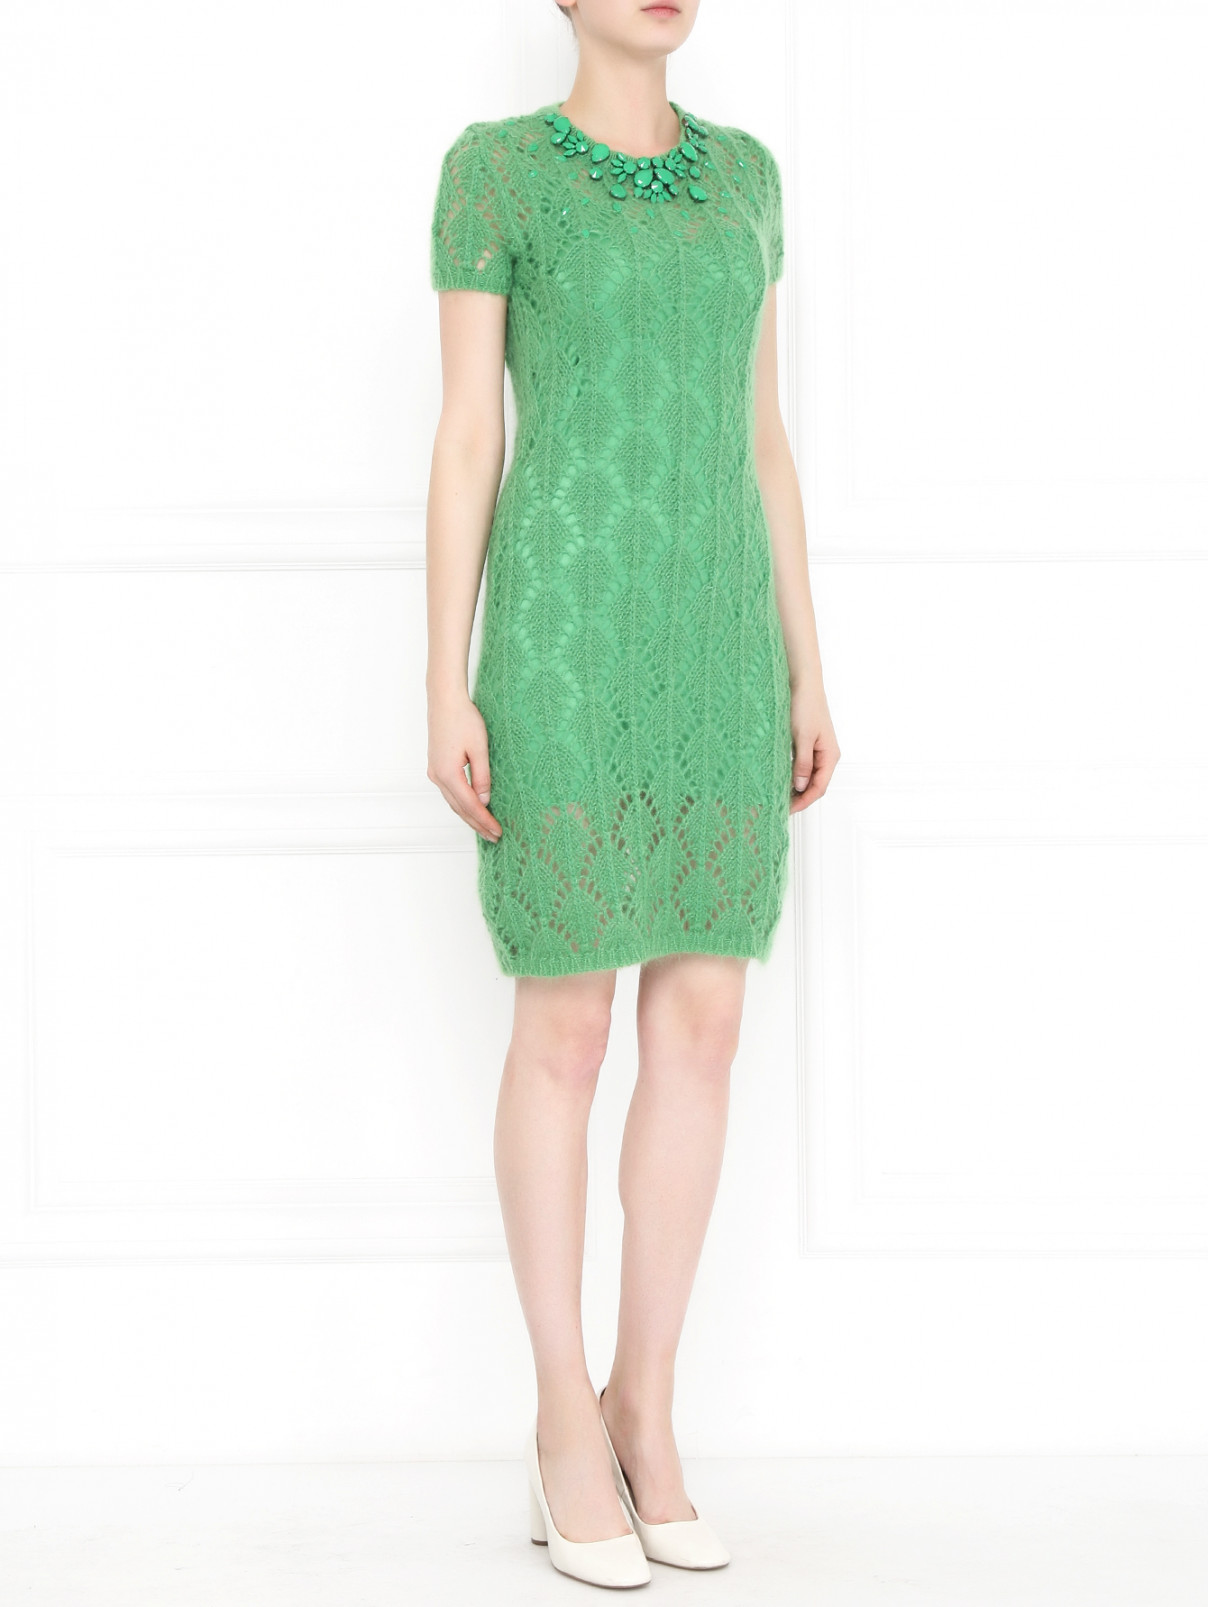 Платье из шерсти  декорированное камнями Ermanno Scervino  –  Модель Общий вид  – Цвет:  Зеленый